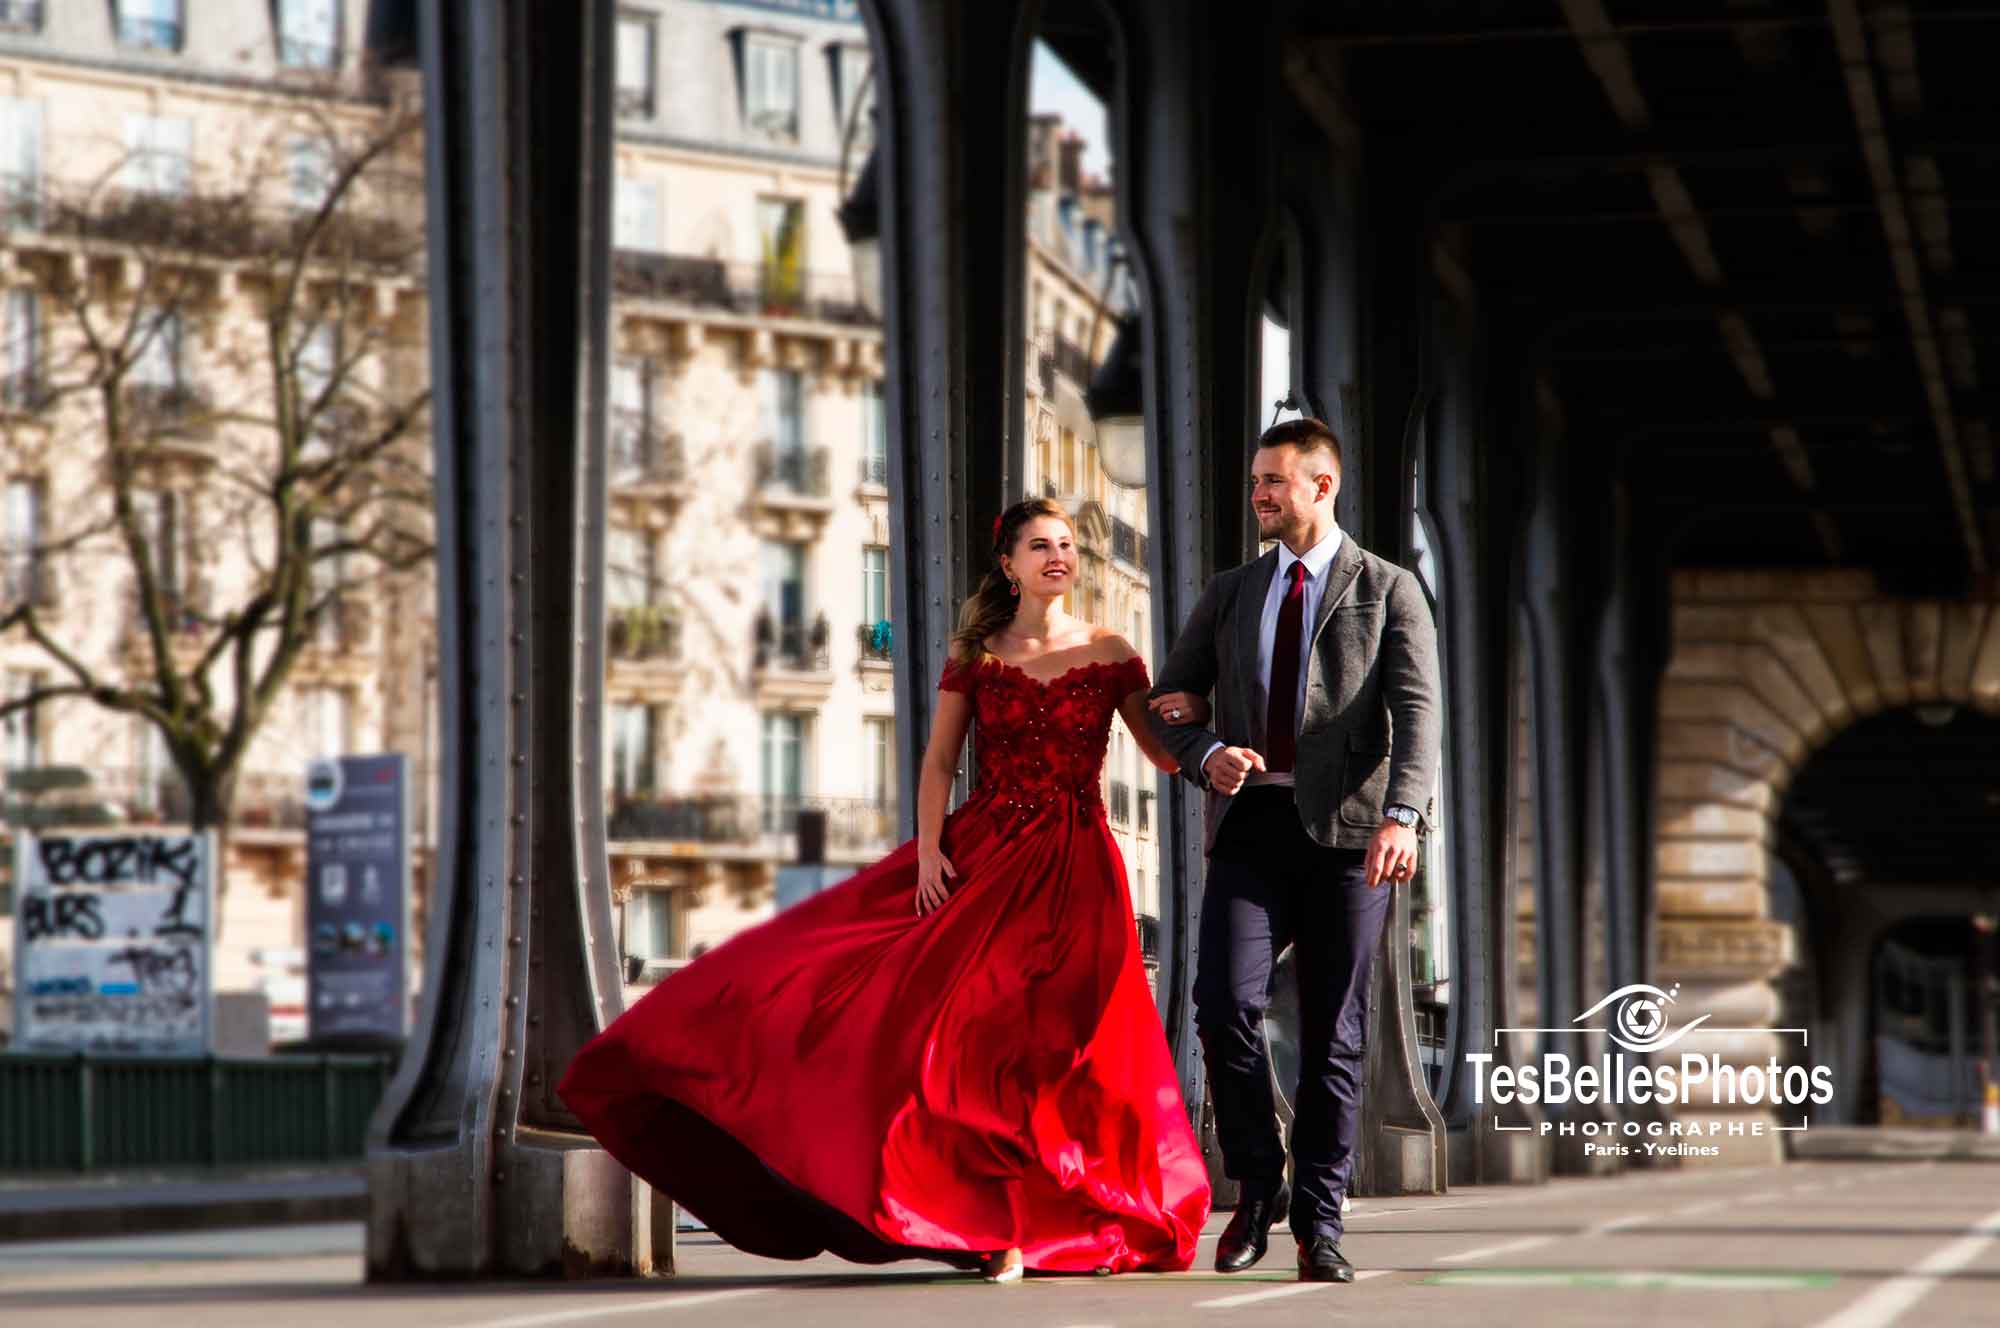 Tarifs photographe mariage Paris, forfait tarif prix de photographe pour reportage photos de mariage à Paris